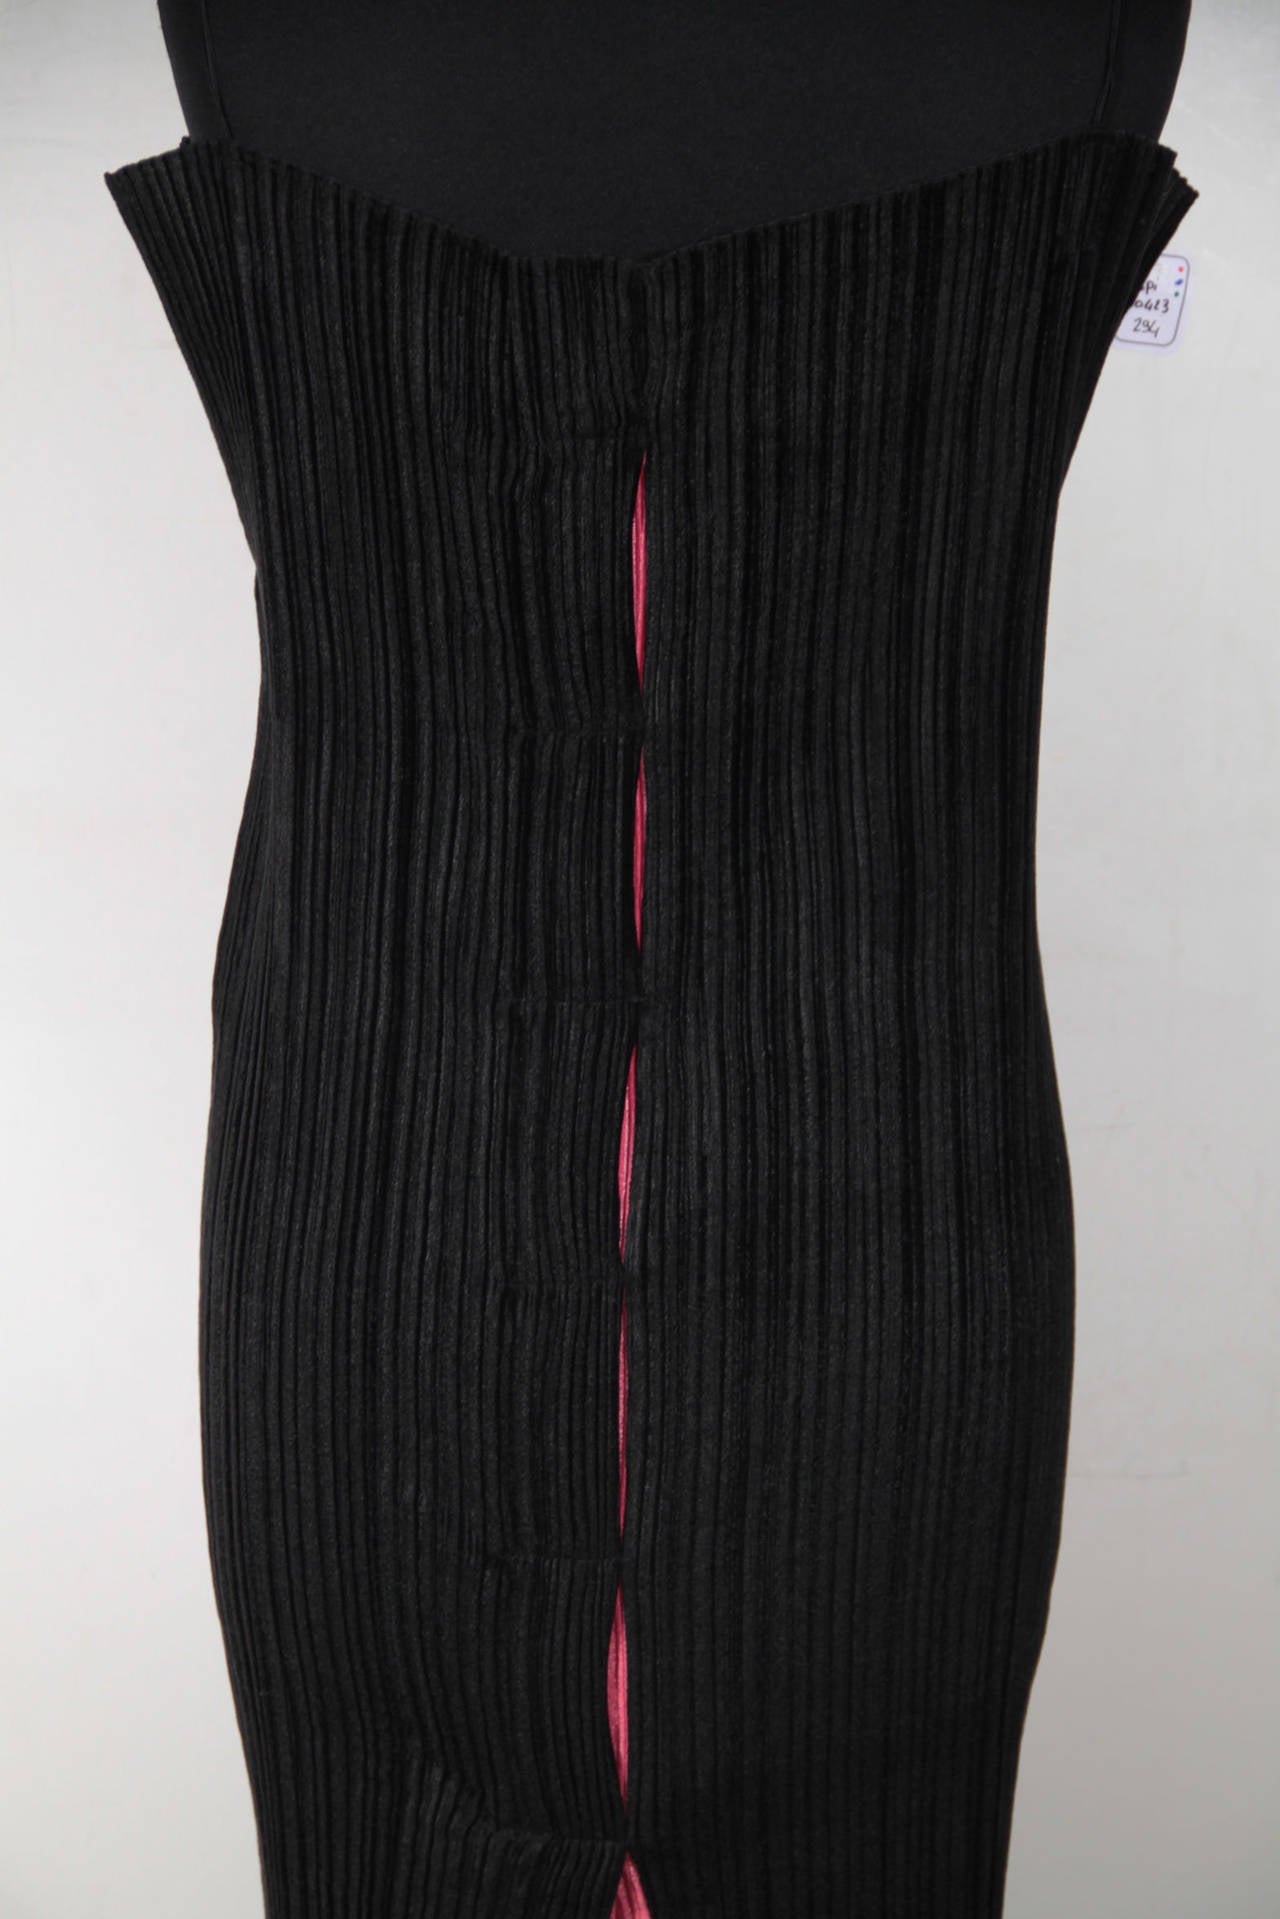 ISSEY MIYAKE Black Pleated DRESS SUIT Jacket & Maxi Dress SET Size S 2